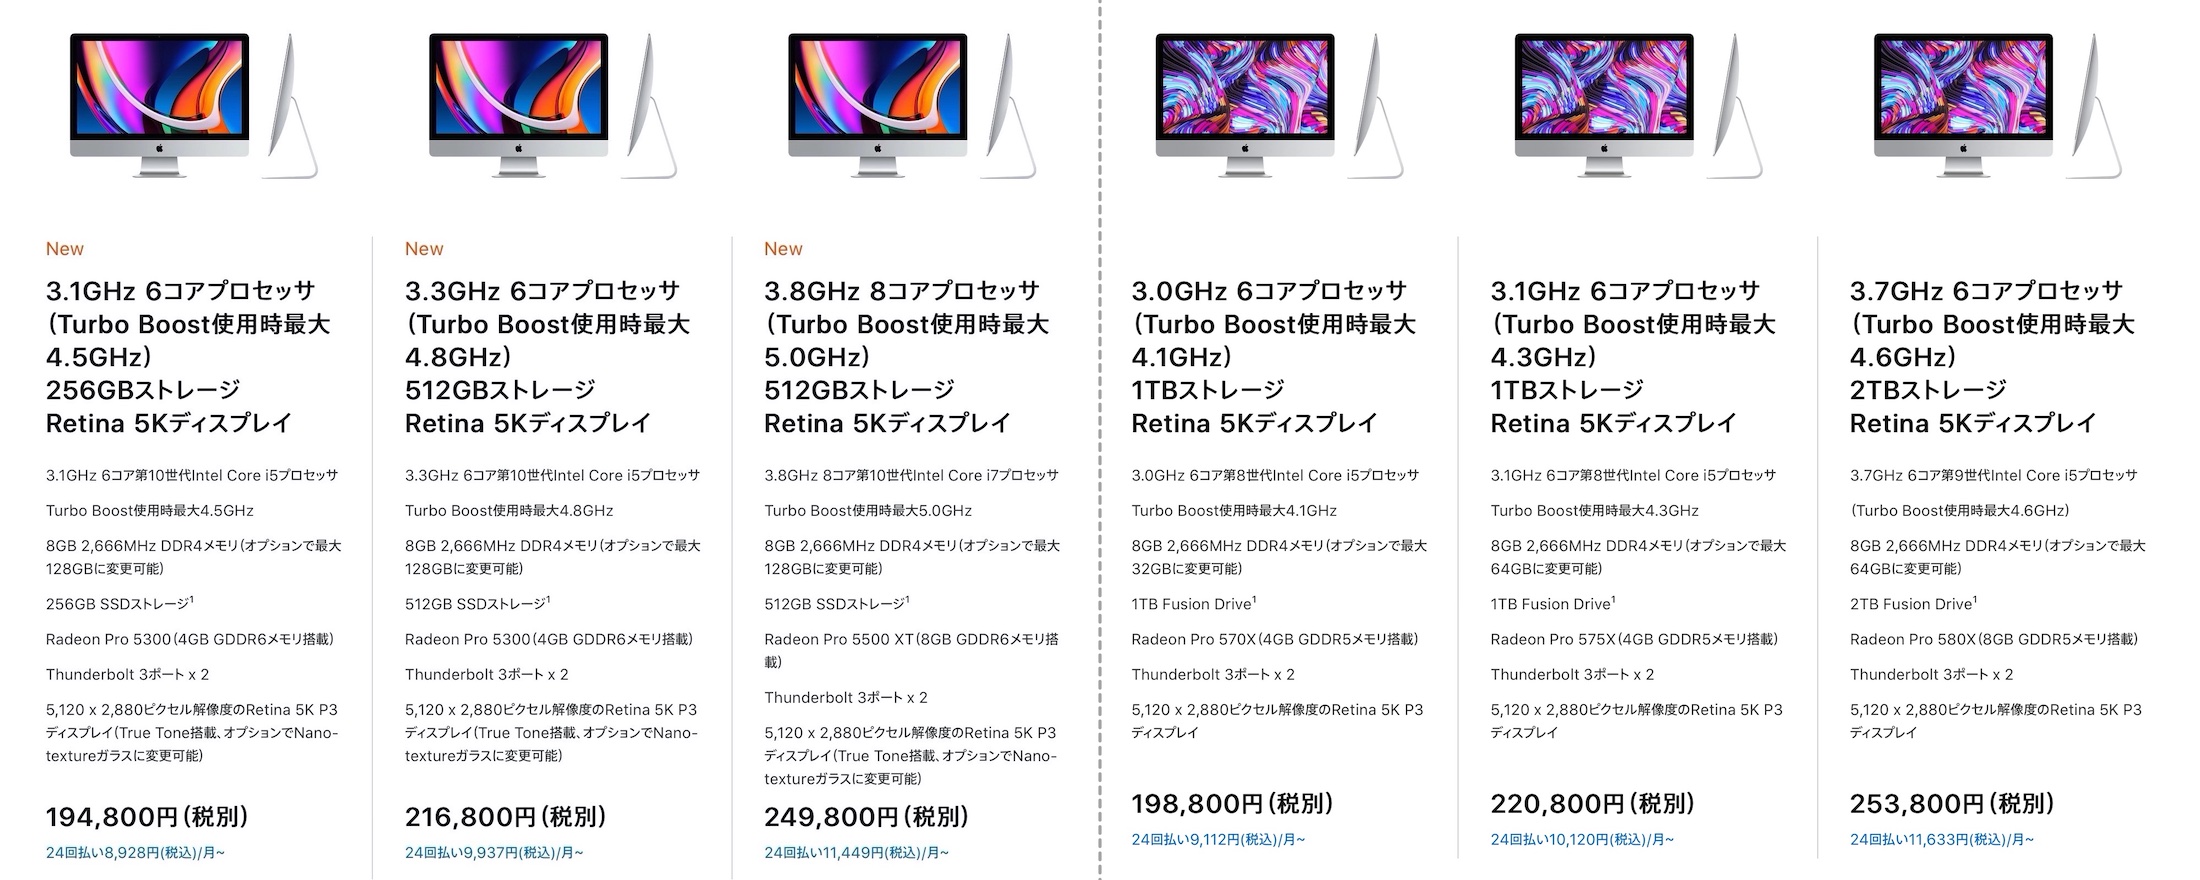 iMac 27インチ 2020/2019のベース構成価格